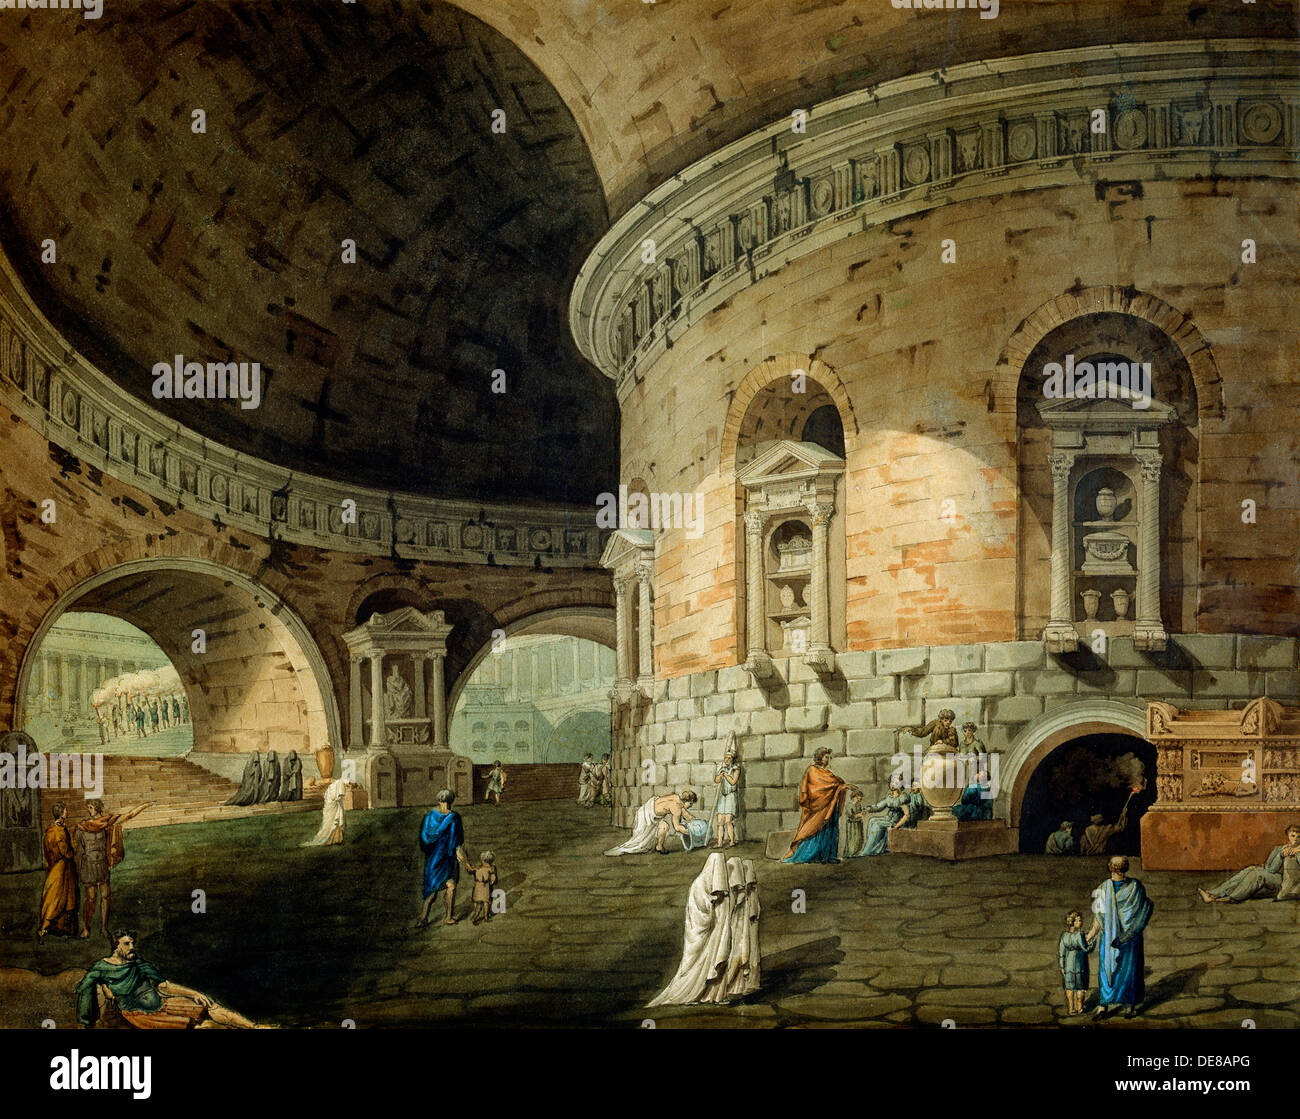 Bühnenbild für ein Theaterstück, Anfang des 19. Jahrhunderts. Künstler: Domenico Corsini Stockfoto